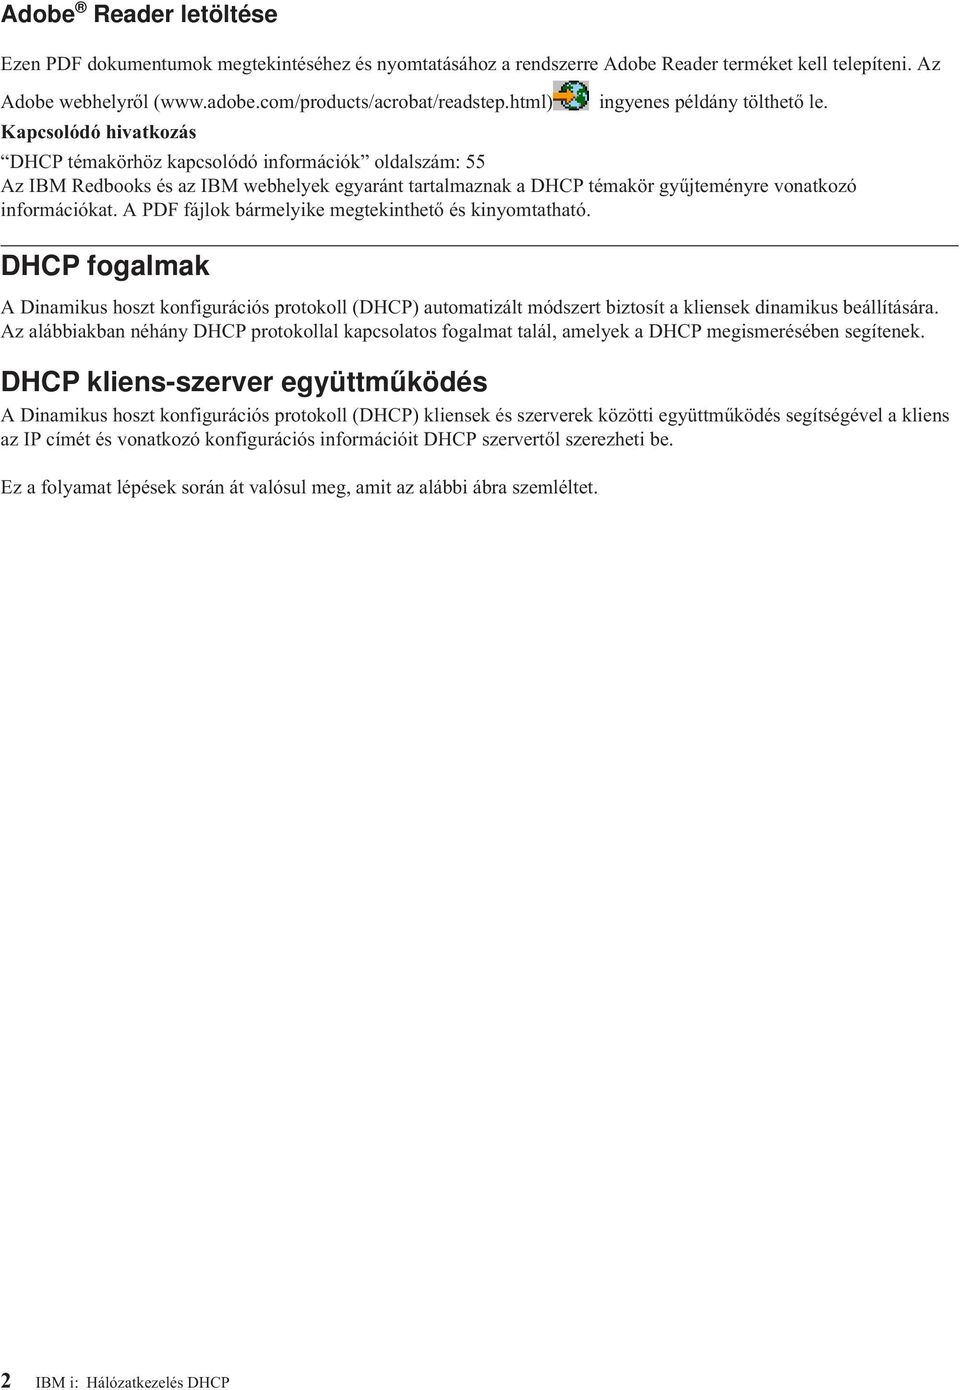 Kapcsolódó hivatkozás DHCP témakörhöz kapcsolódó információk oldalszám: 55 Az IBM Redbooks és az IBM webhelyek egyaránt tartalmaznak a DHCP témakör gyűjteményre vonatkozó információkat.